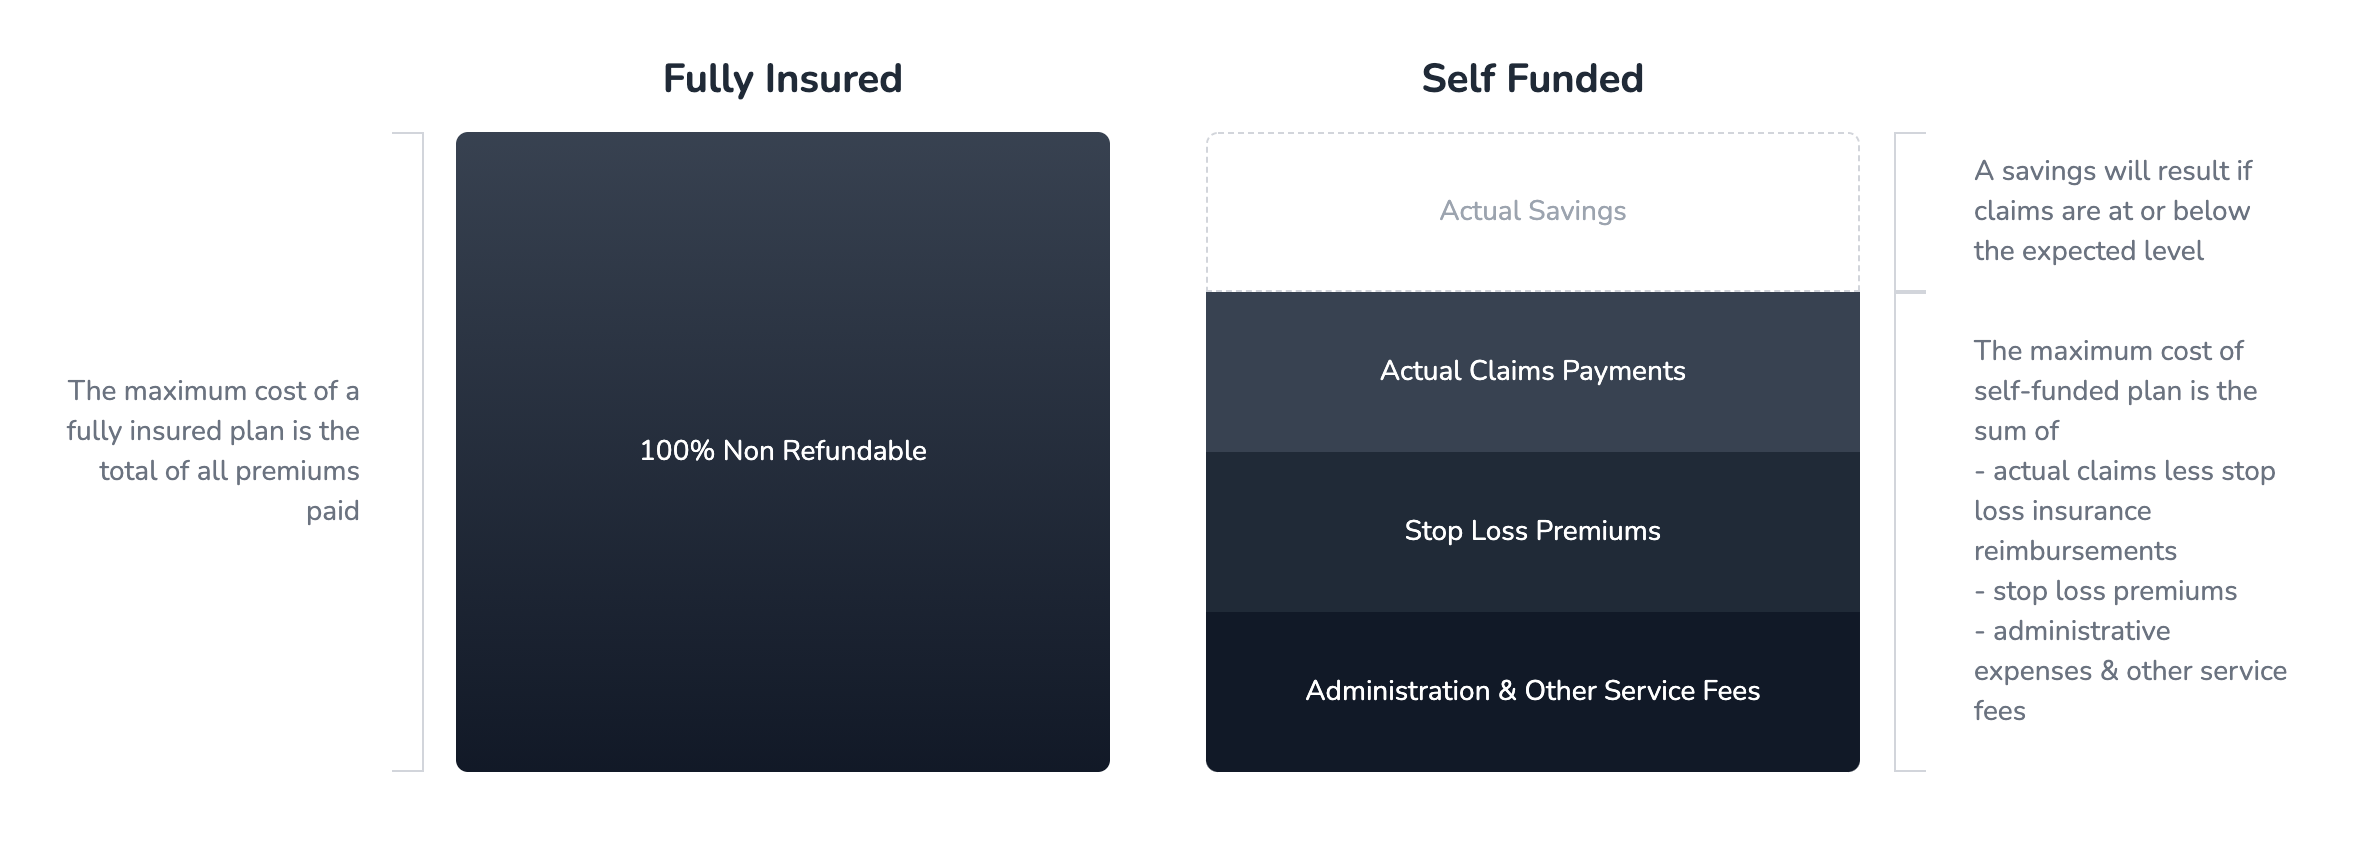 Self-Funded vs Fully Insured Health Insurance